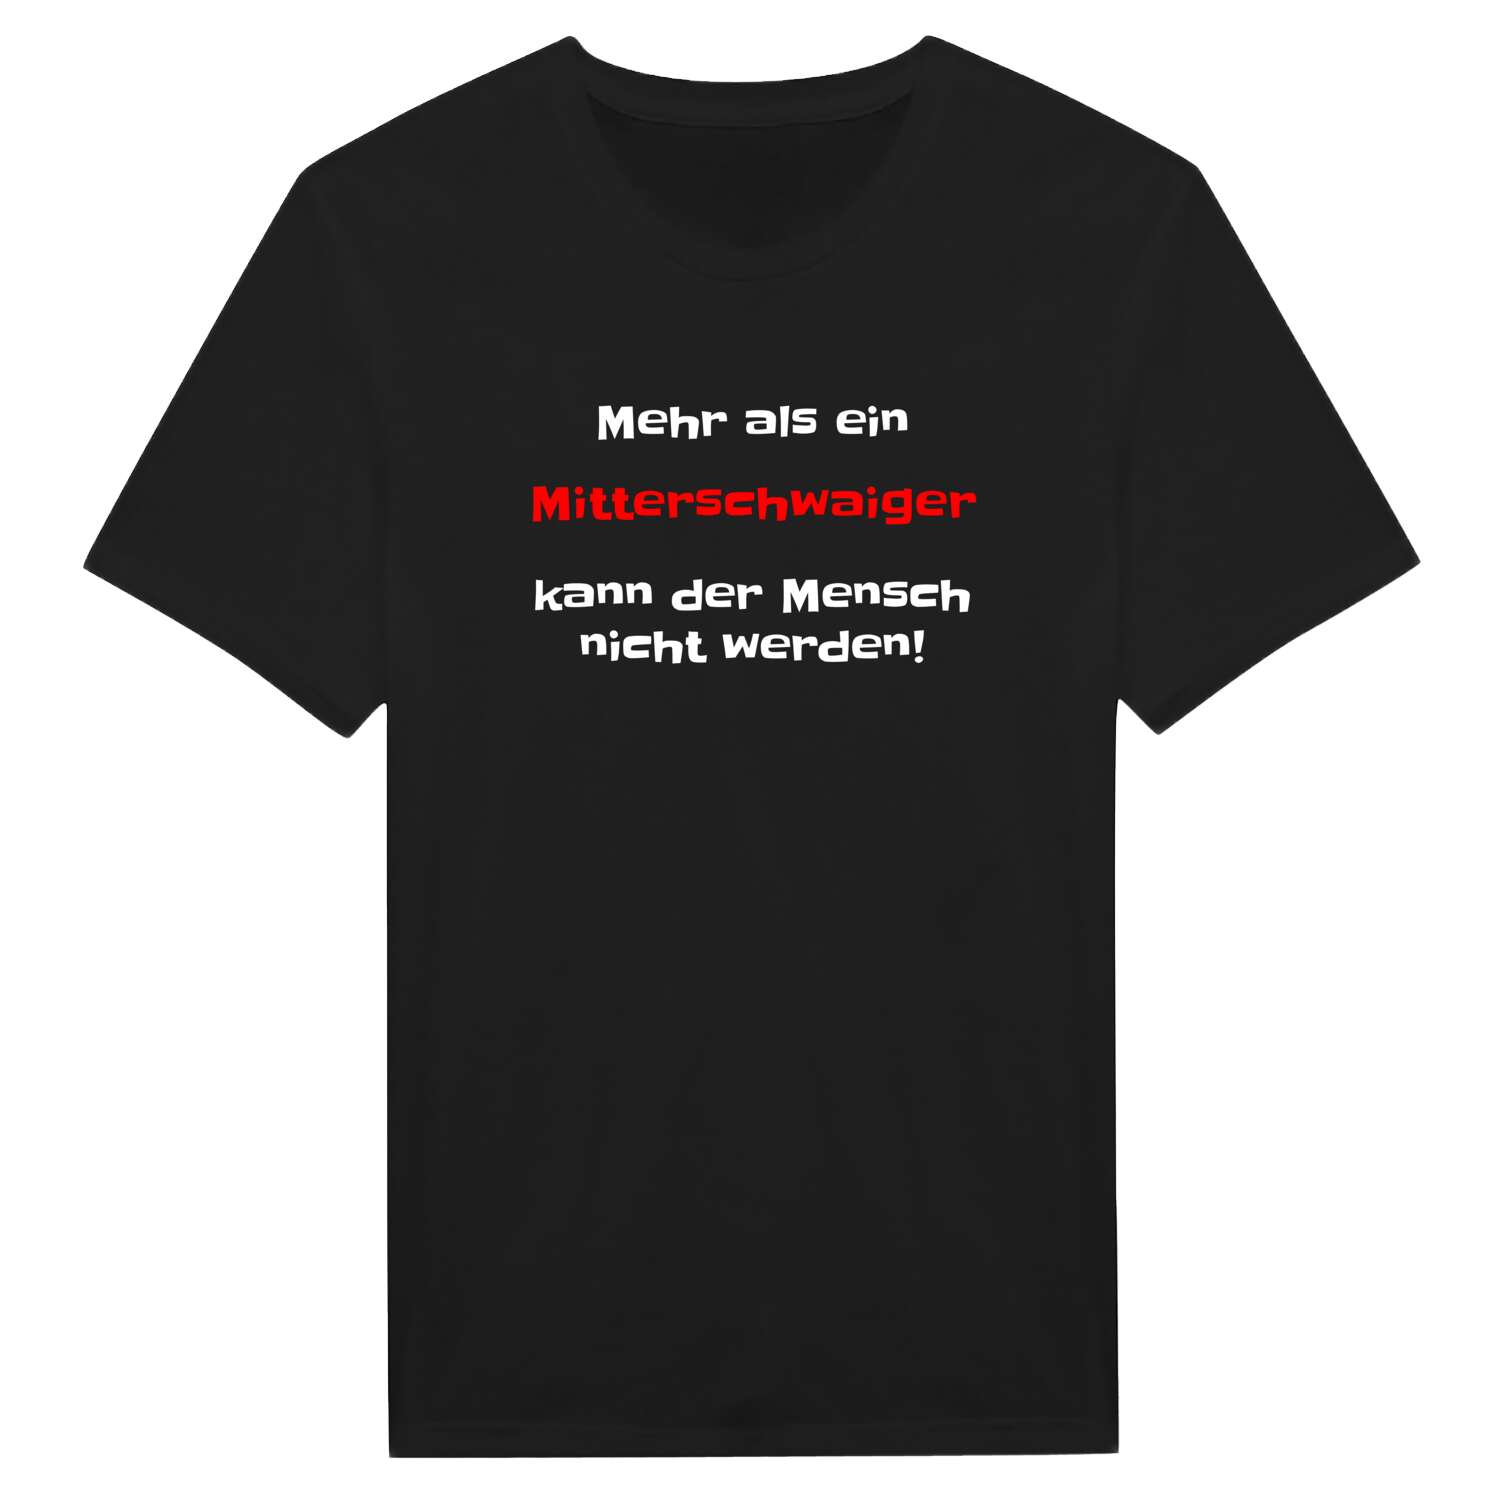 Mitterschwaig T-Shirt »Mehr als ein«